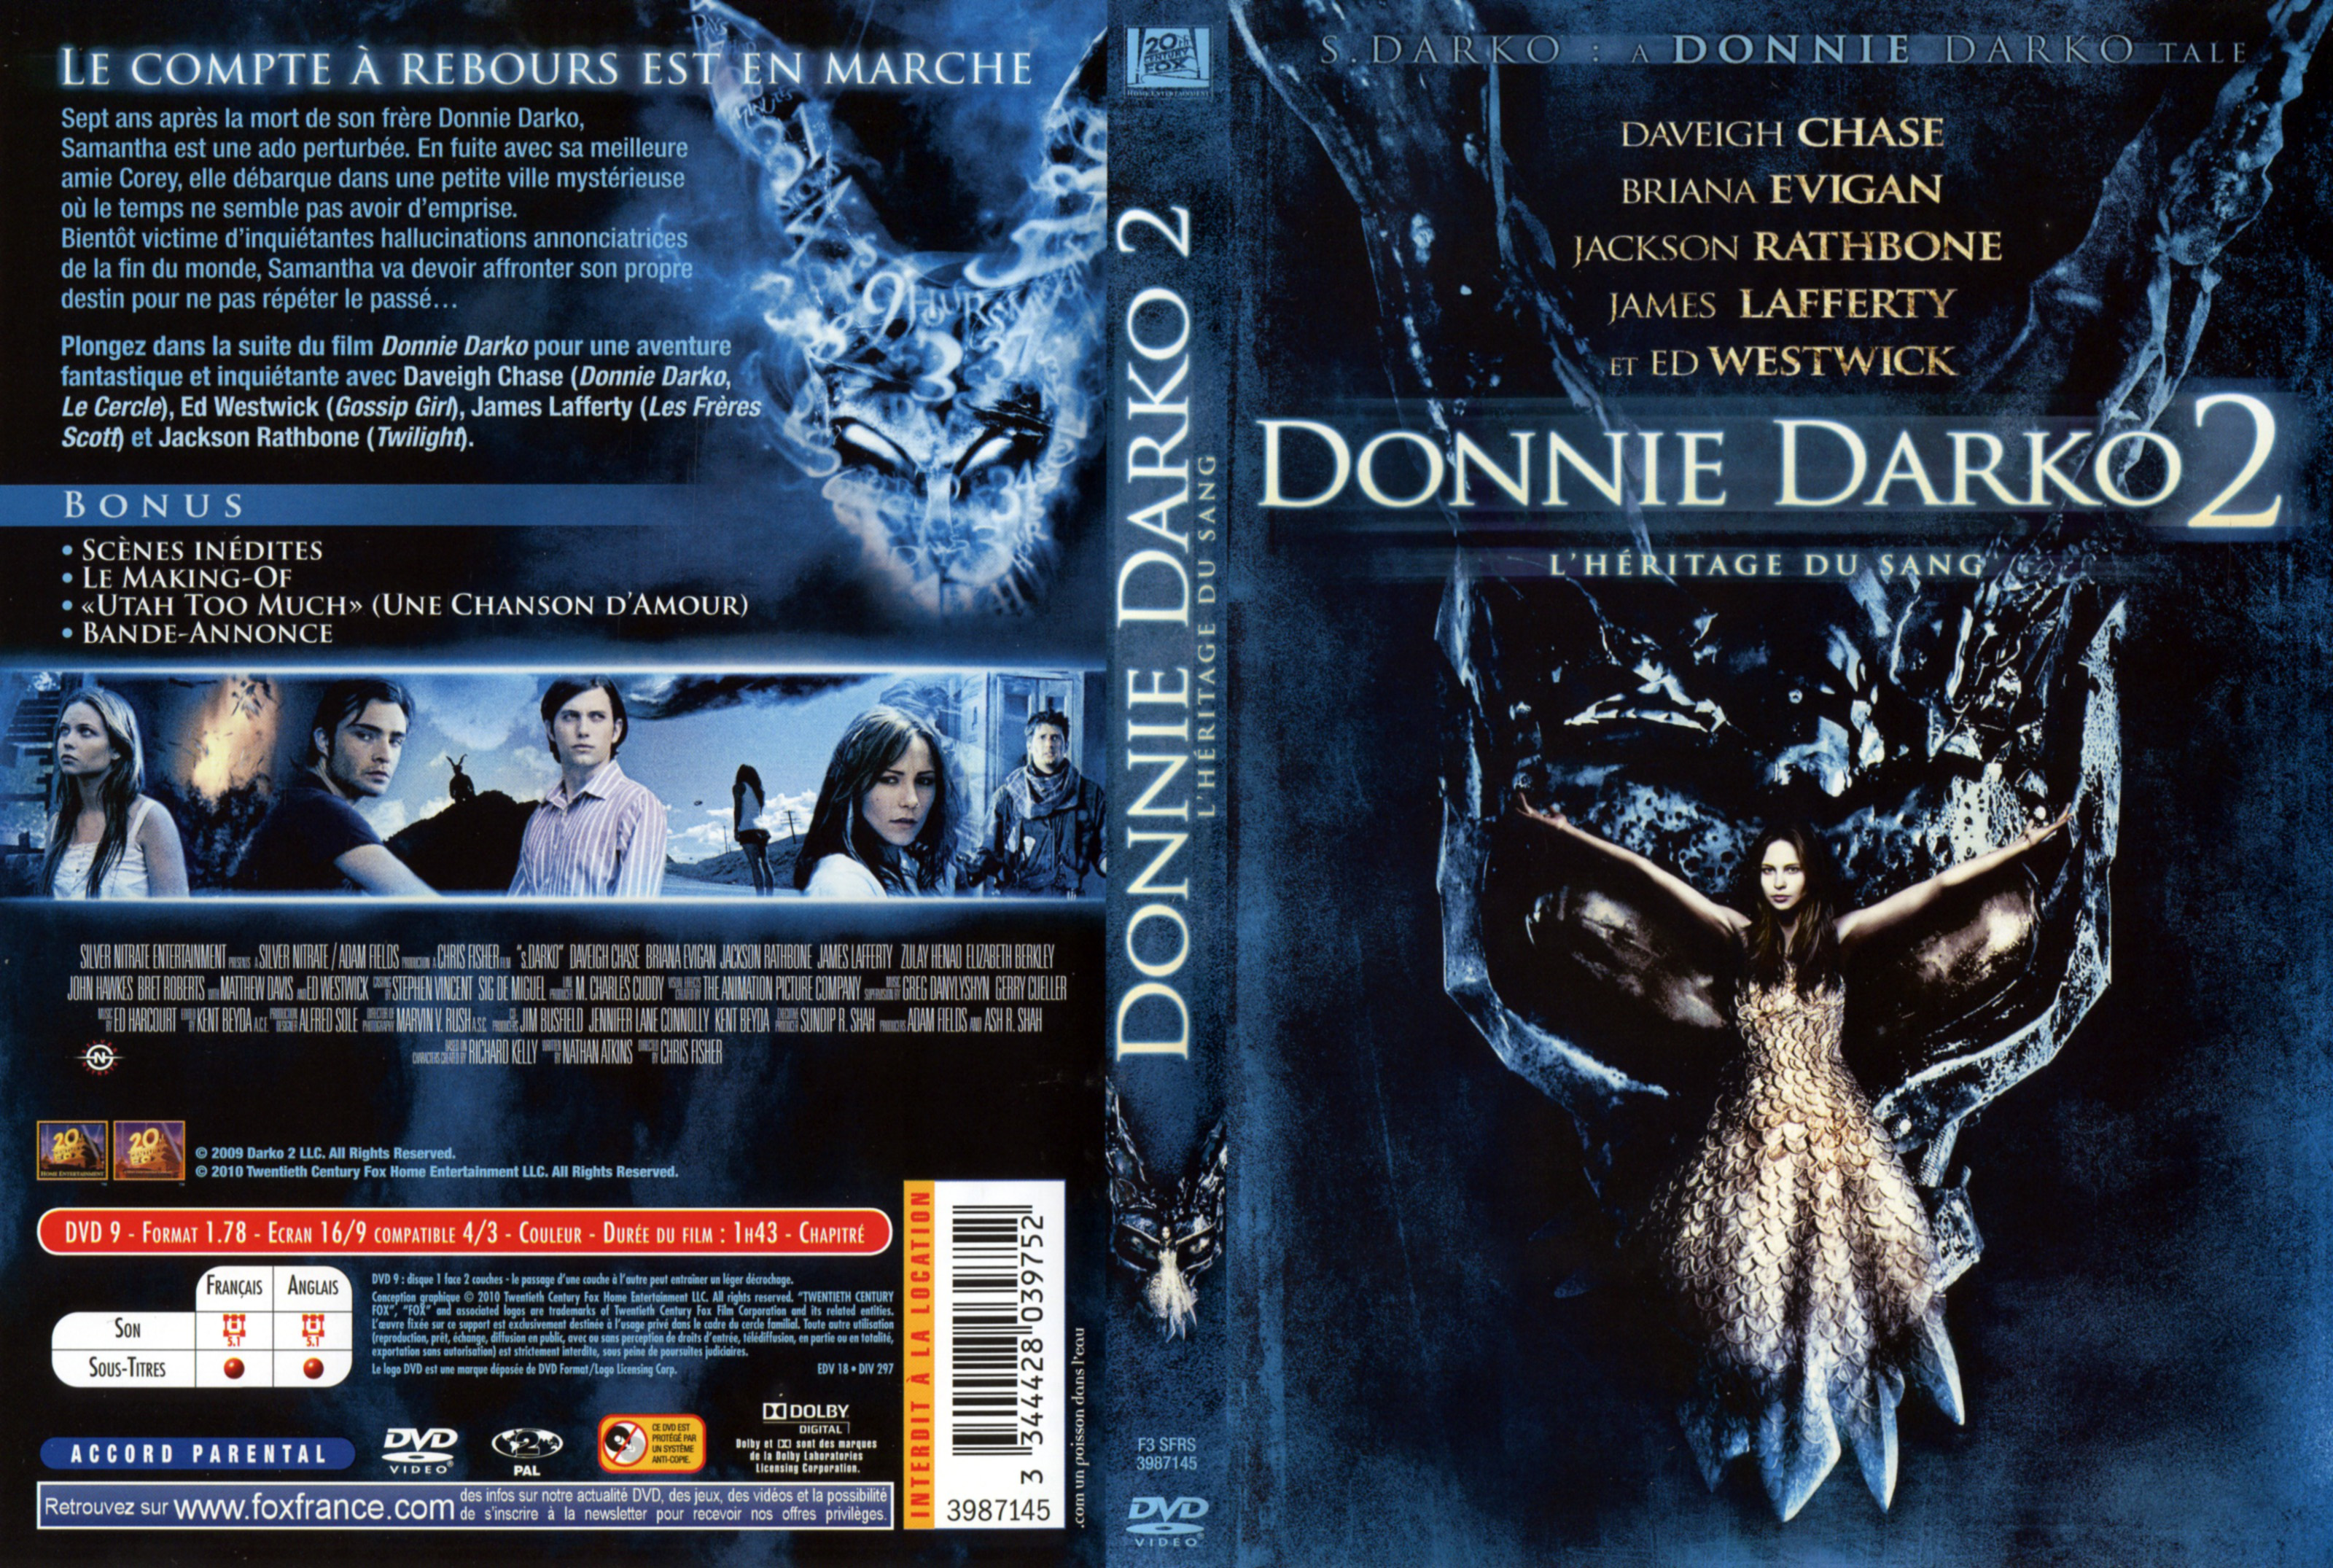 Jaquette DVD Donnie Darko 2